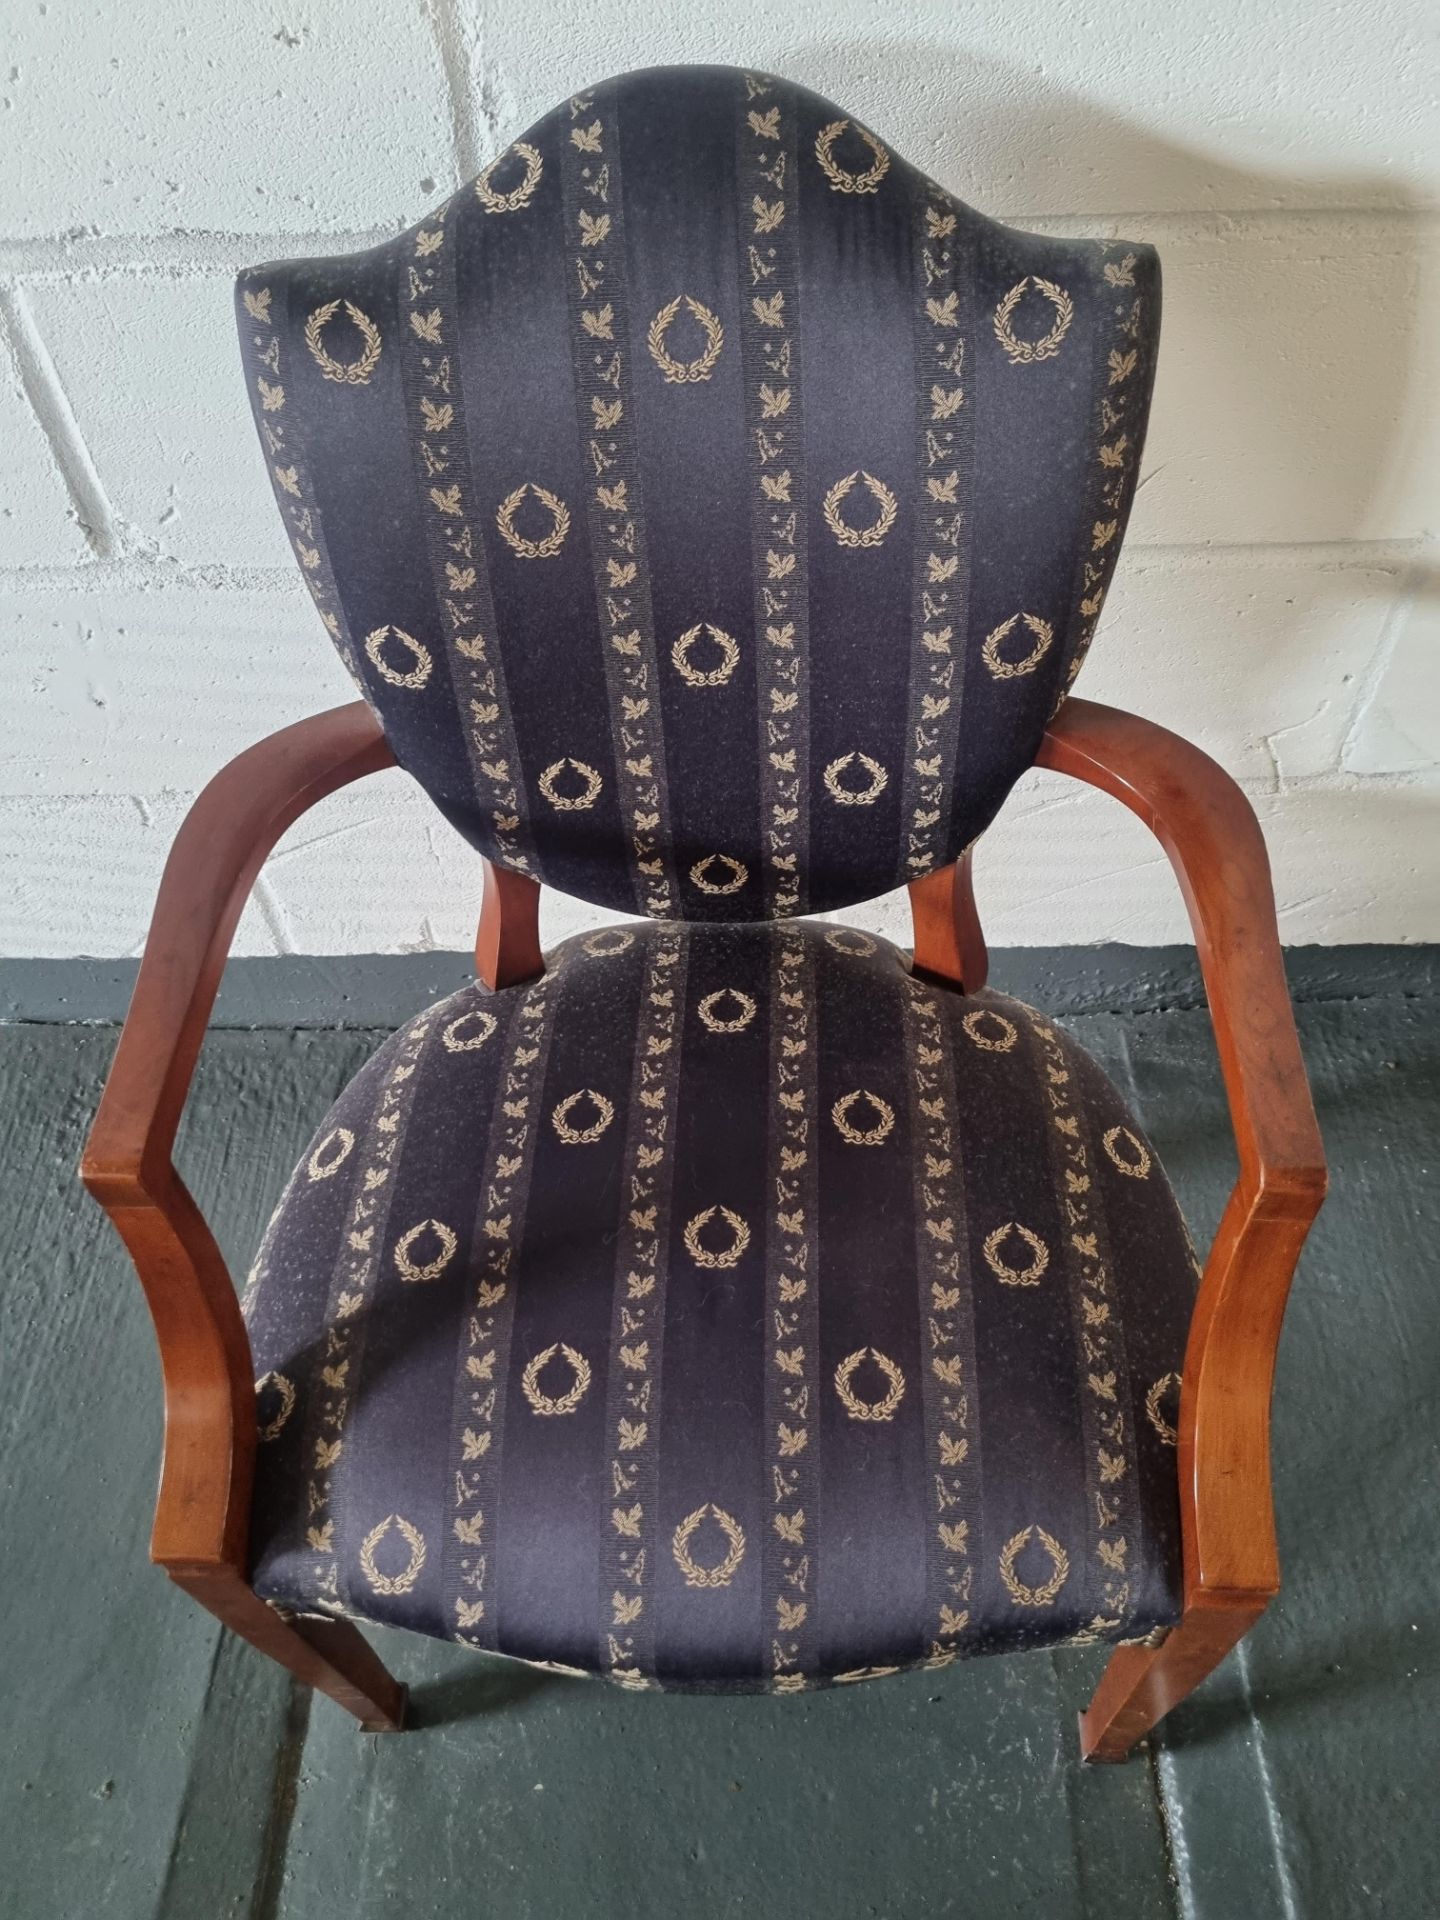 Arthur Brett Upholstered Shield Back Arm Chair Blue Patterned Bespoke Upholstery The Shield Back - Image 4 of 4